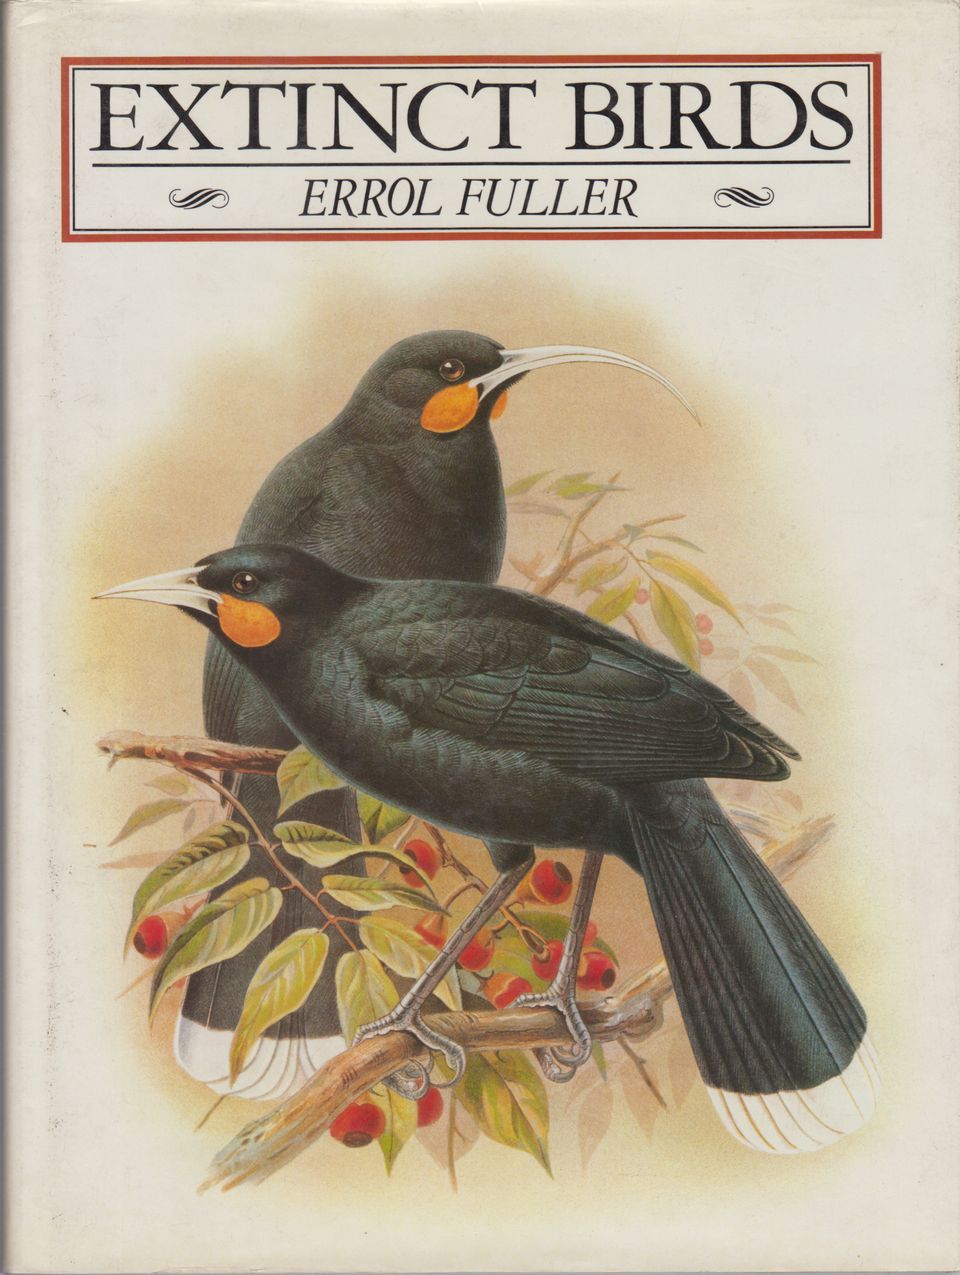 EXTINCT BIRDS. By Errol Fuller. - Fuller (Errol).